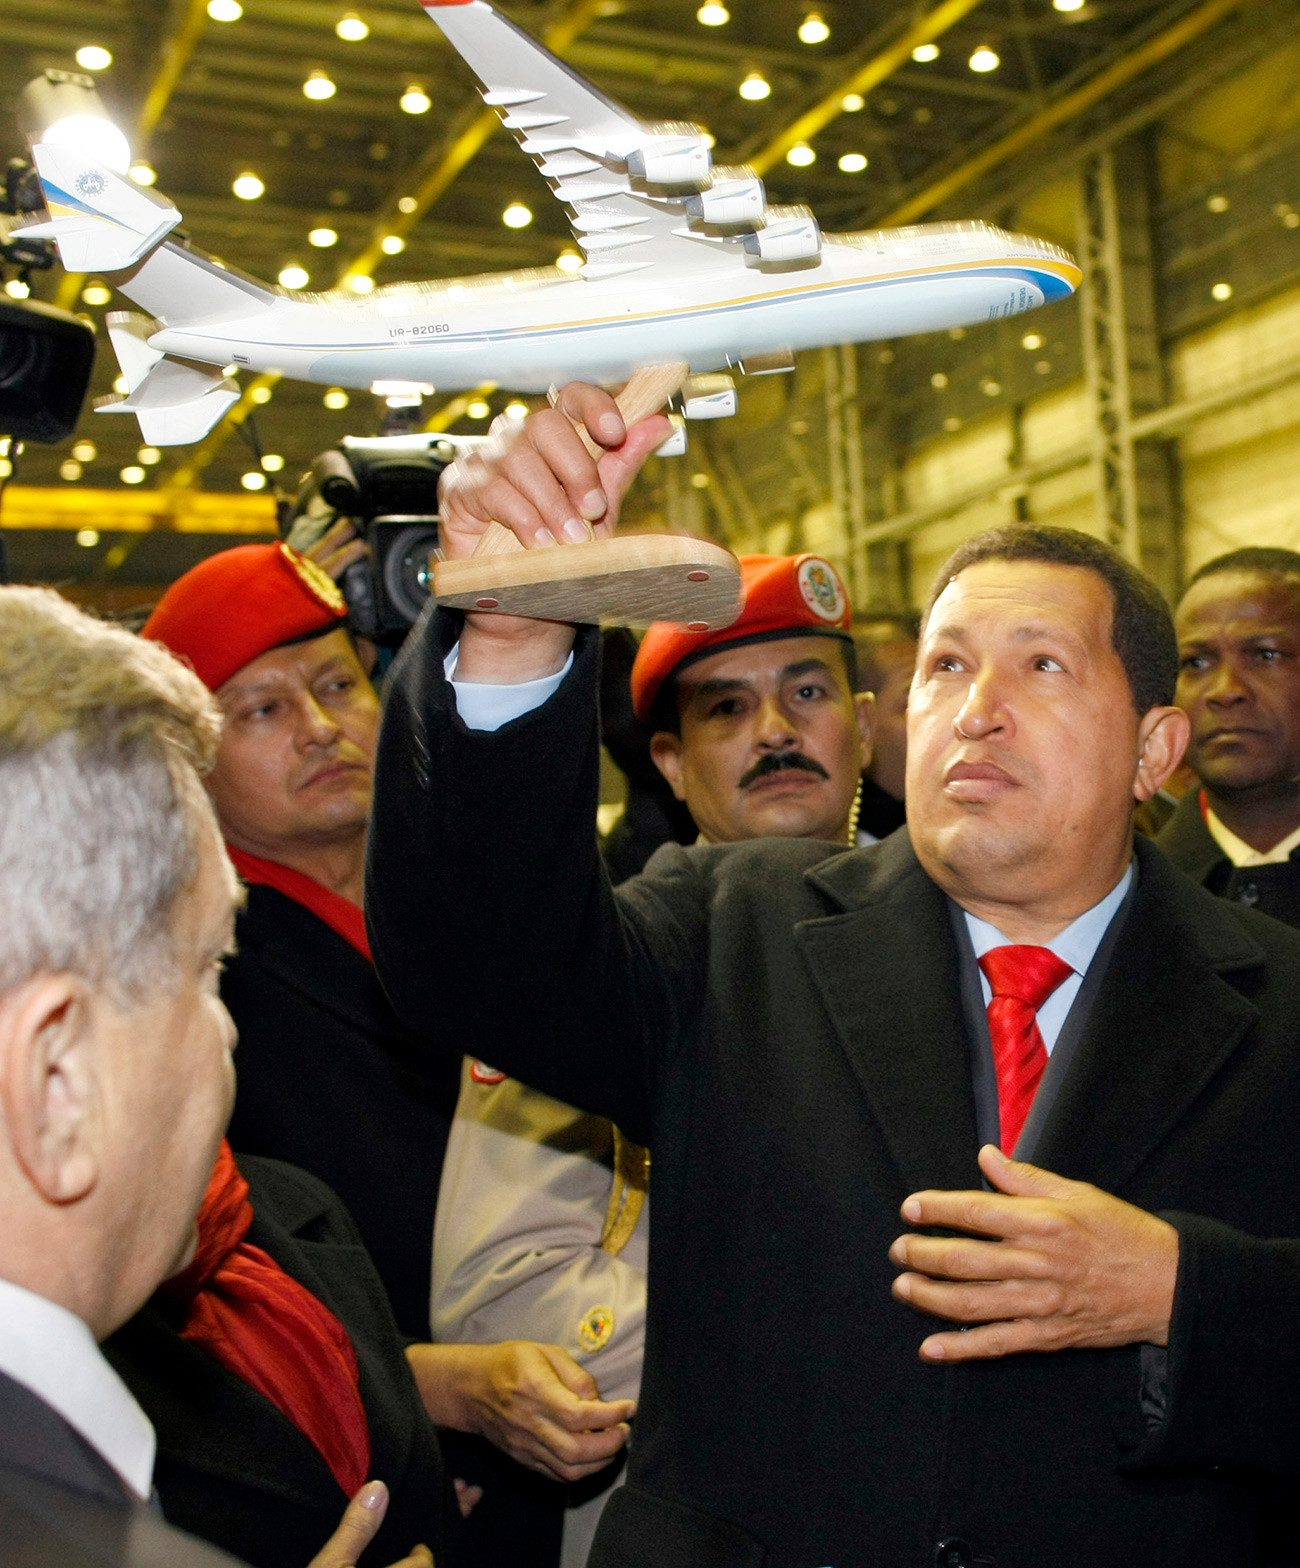 Nekdanji venezuelski predsednik Hugo Chávez v rokah drži model letala An-225 med obiskom tovarne Antonov v Kijevu.